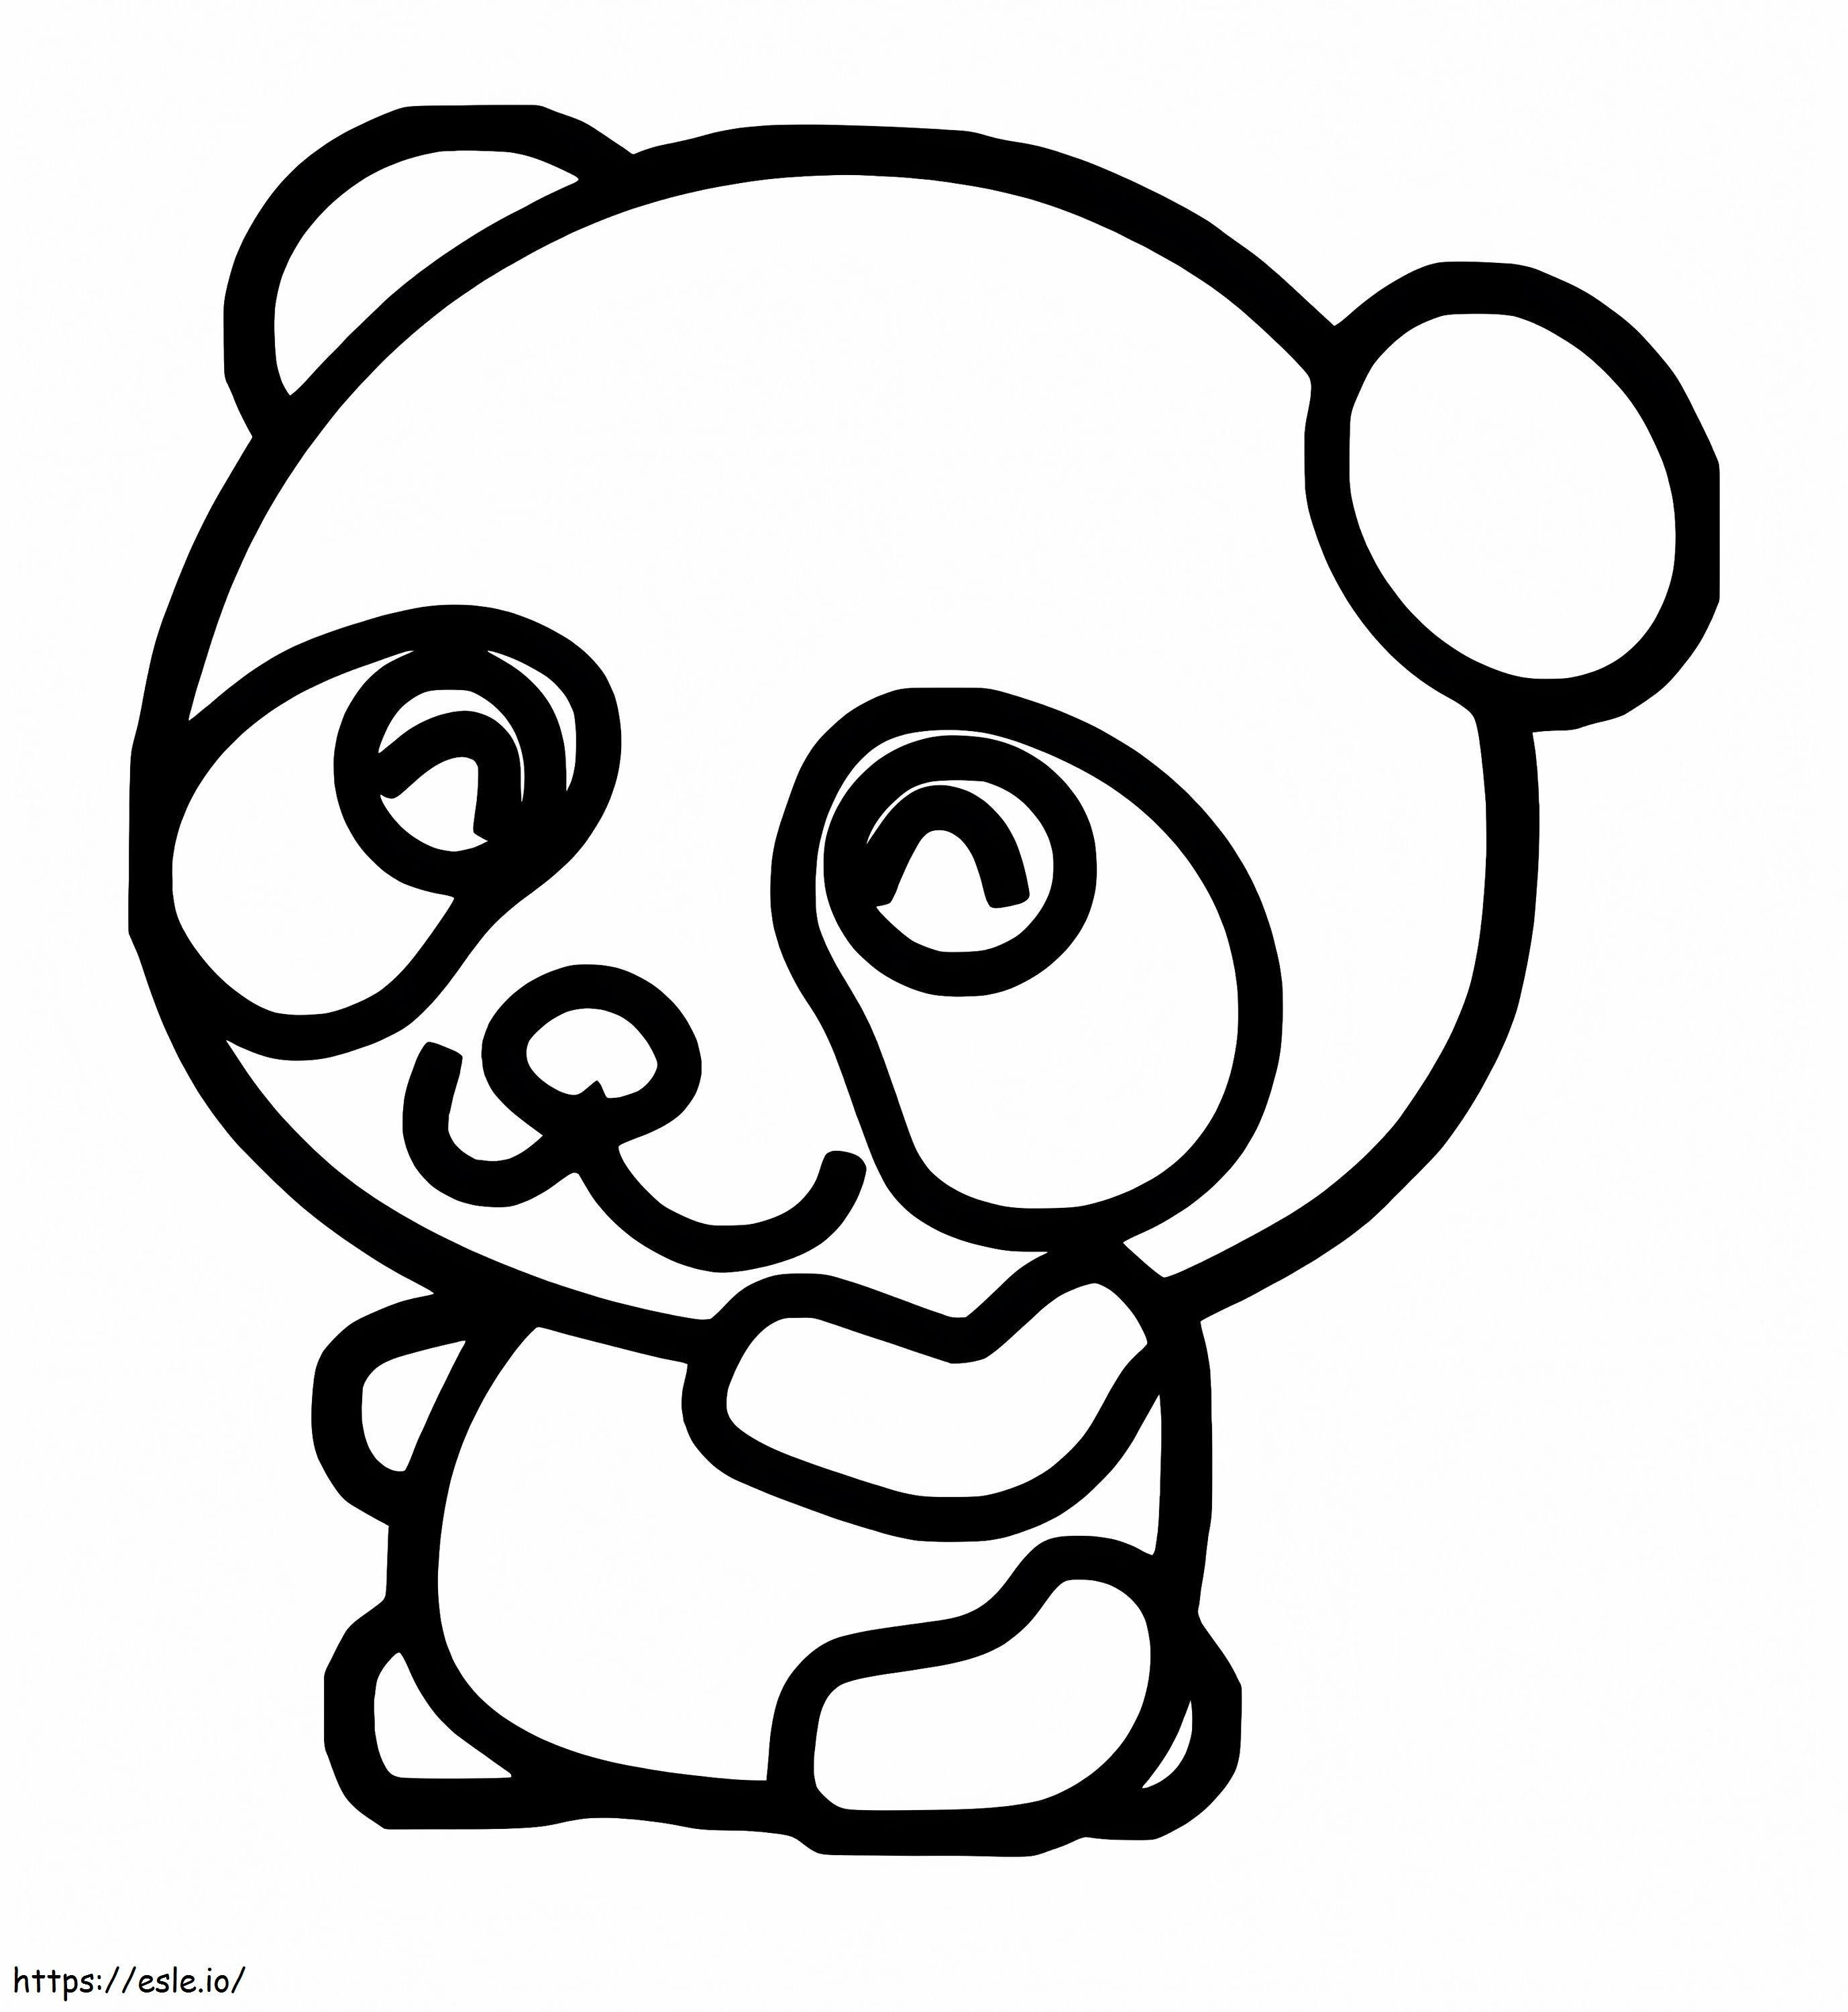 Rysowanie Małej Pandy kolorowanka